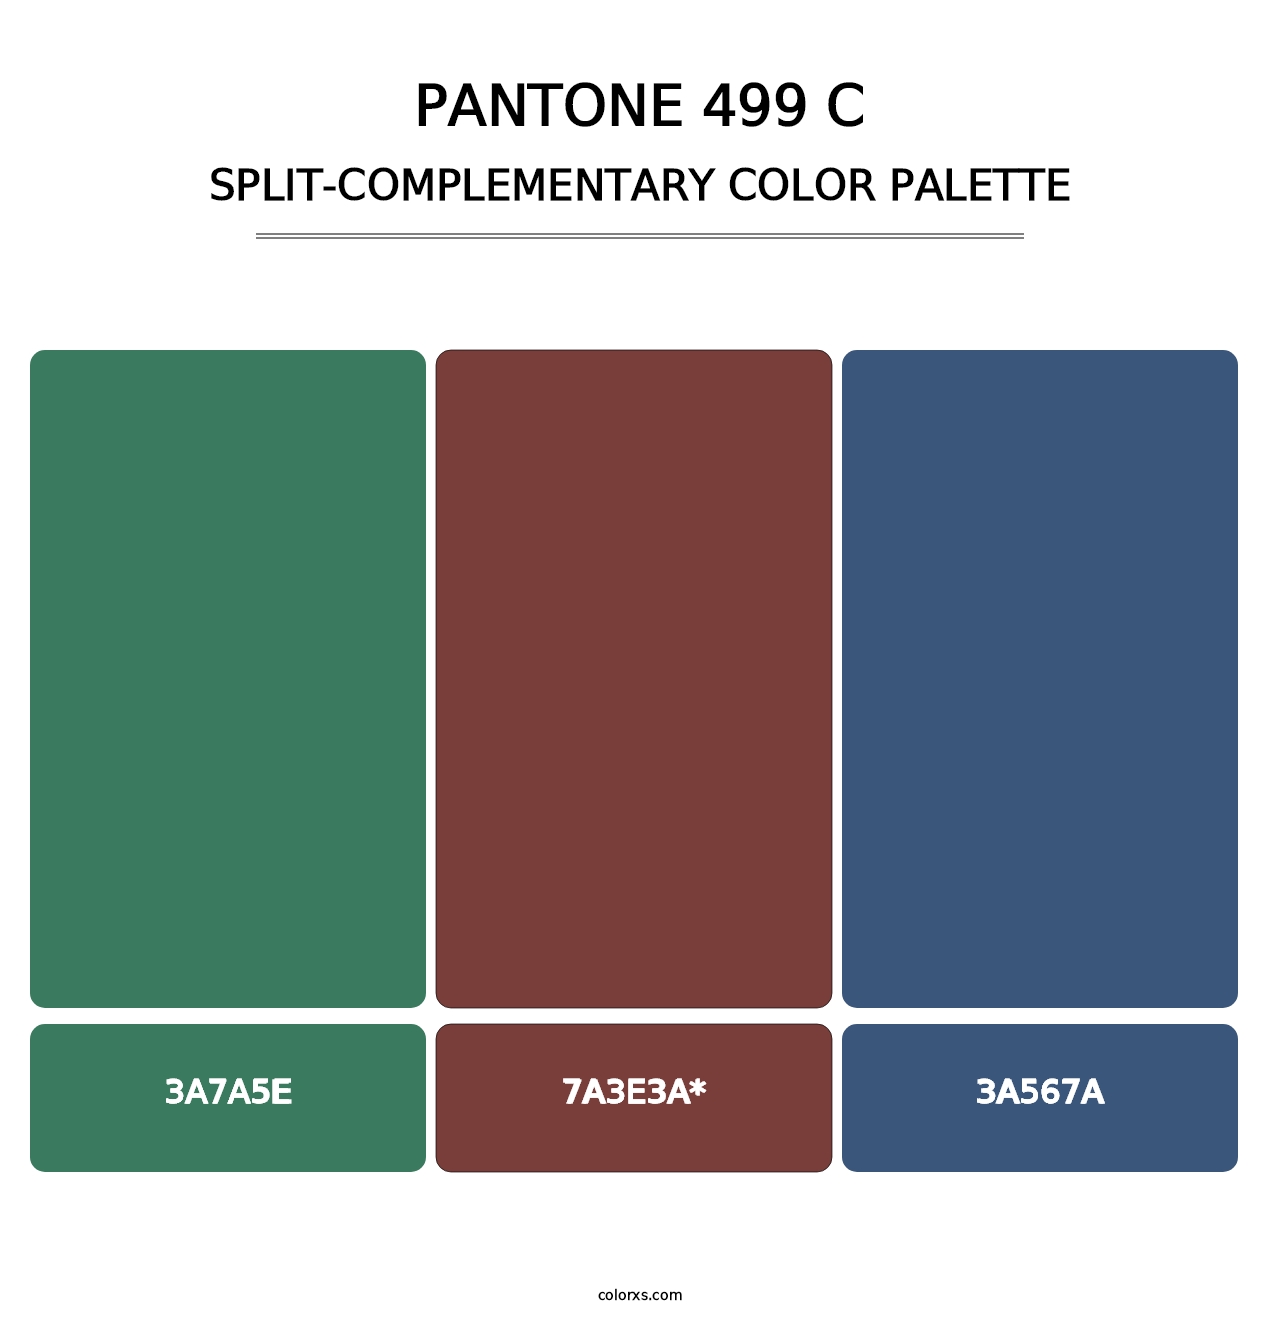 PANTONE 499 C - Split-Complementary Color Palette